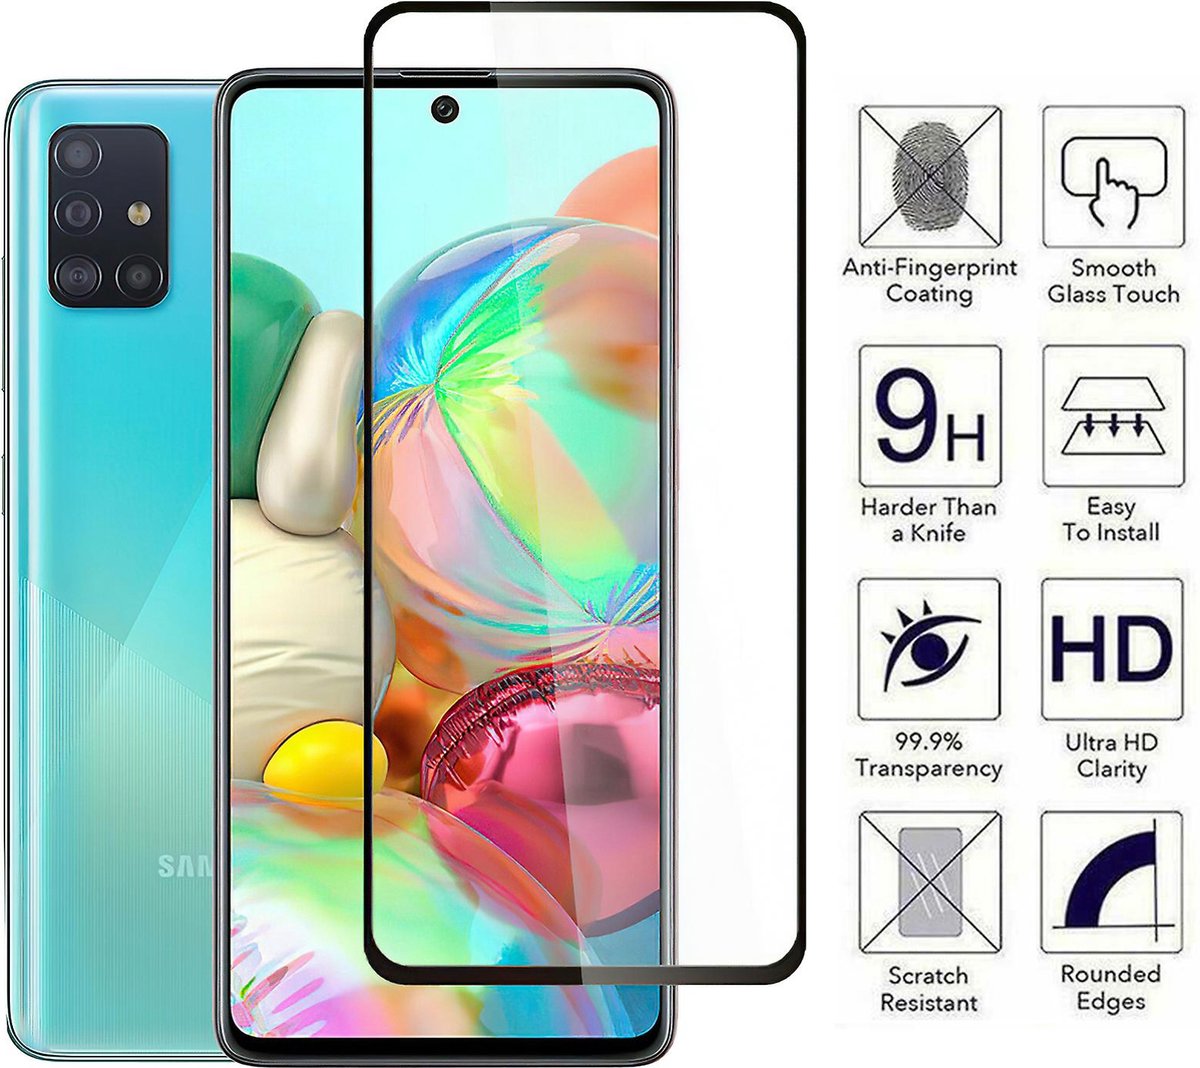 GREEN ON | Beschermlaagje | Samsung | Galaxy A51 | PRO 3D | Gehard Glas | 9H | Screenprotector | HIGH-END!